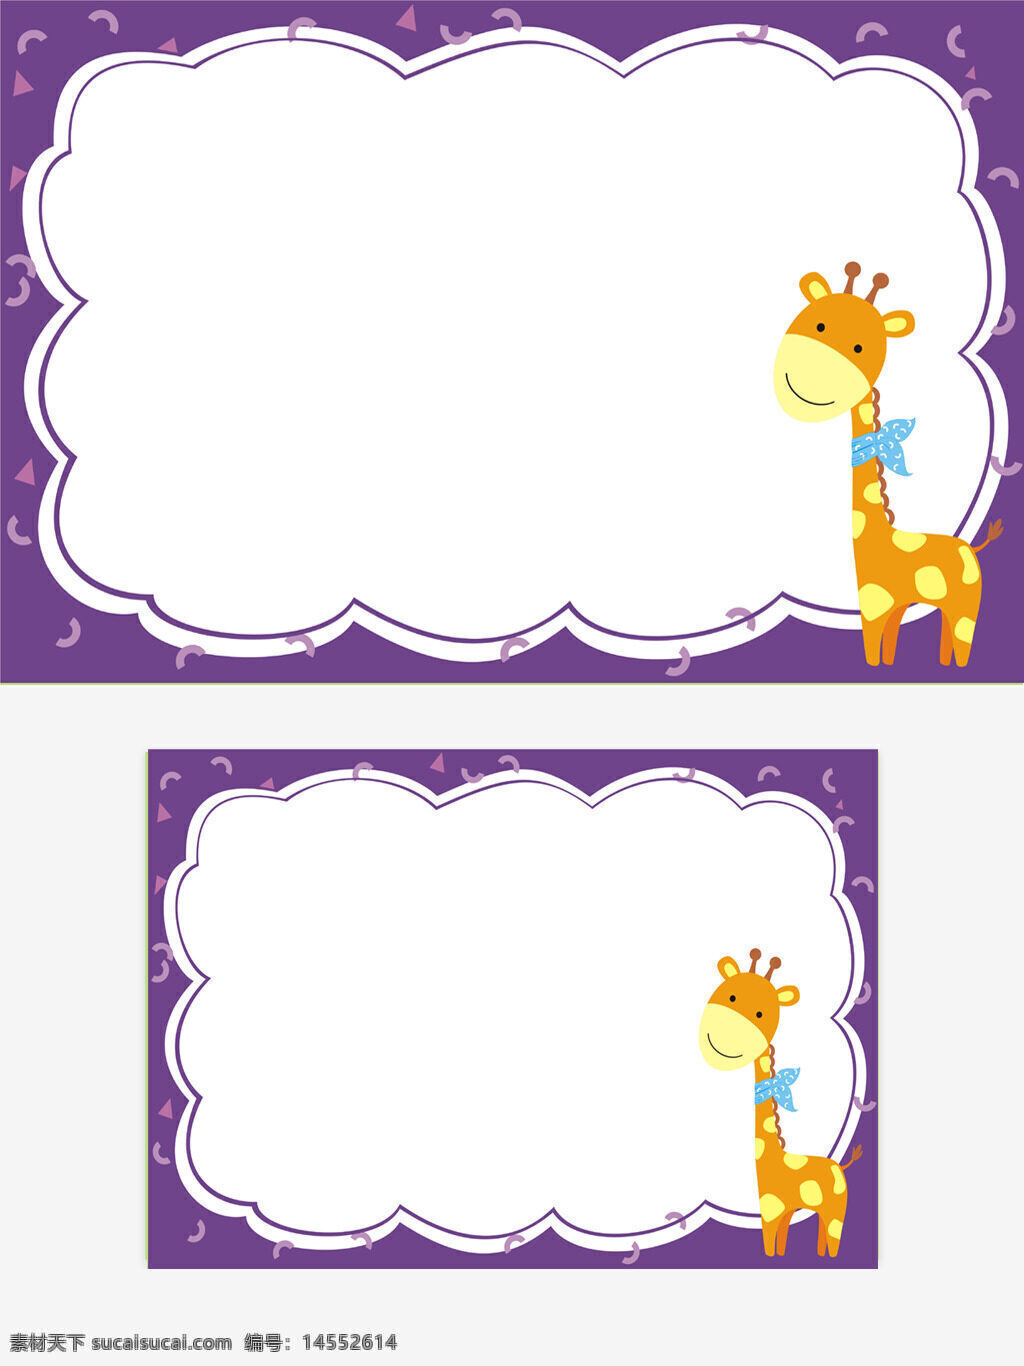 紫色 长颈鹿 可爱 边框 矢量图 可缩放